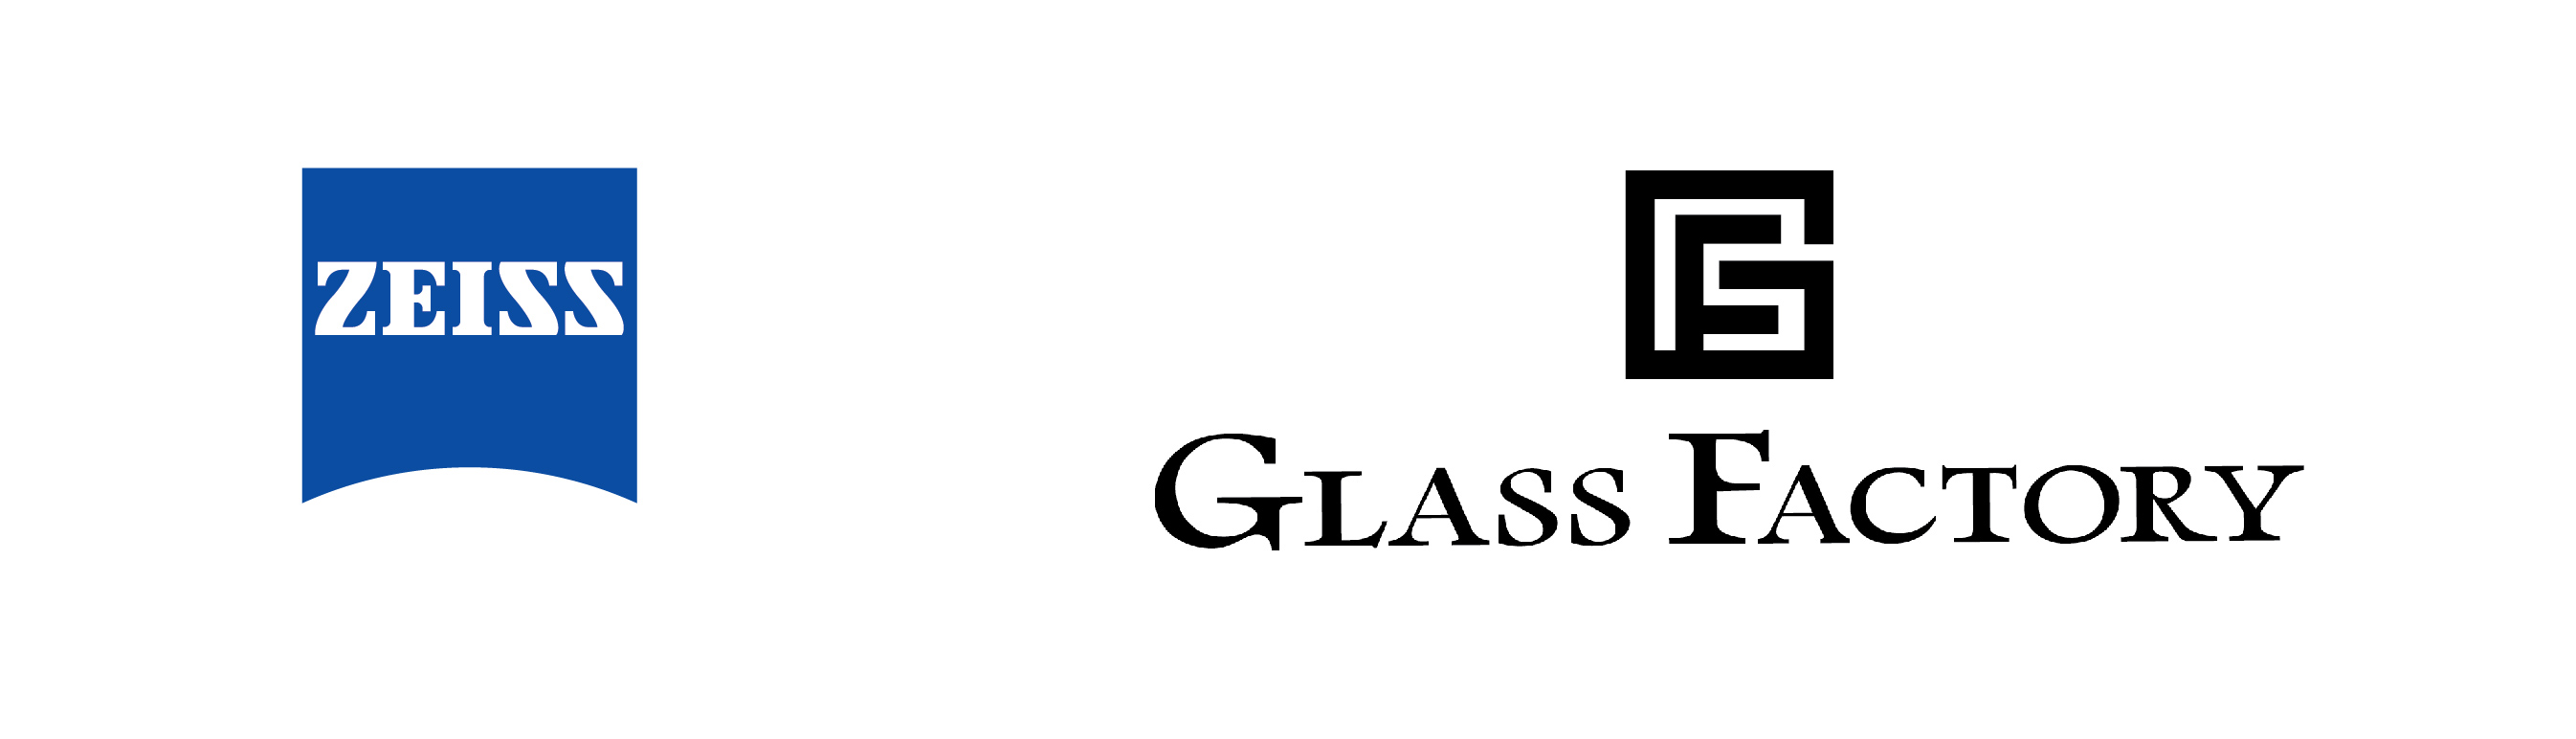 20160324_ZEISS GLASS FACTORY.jpg